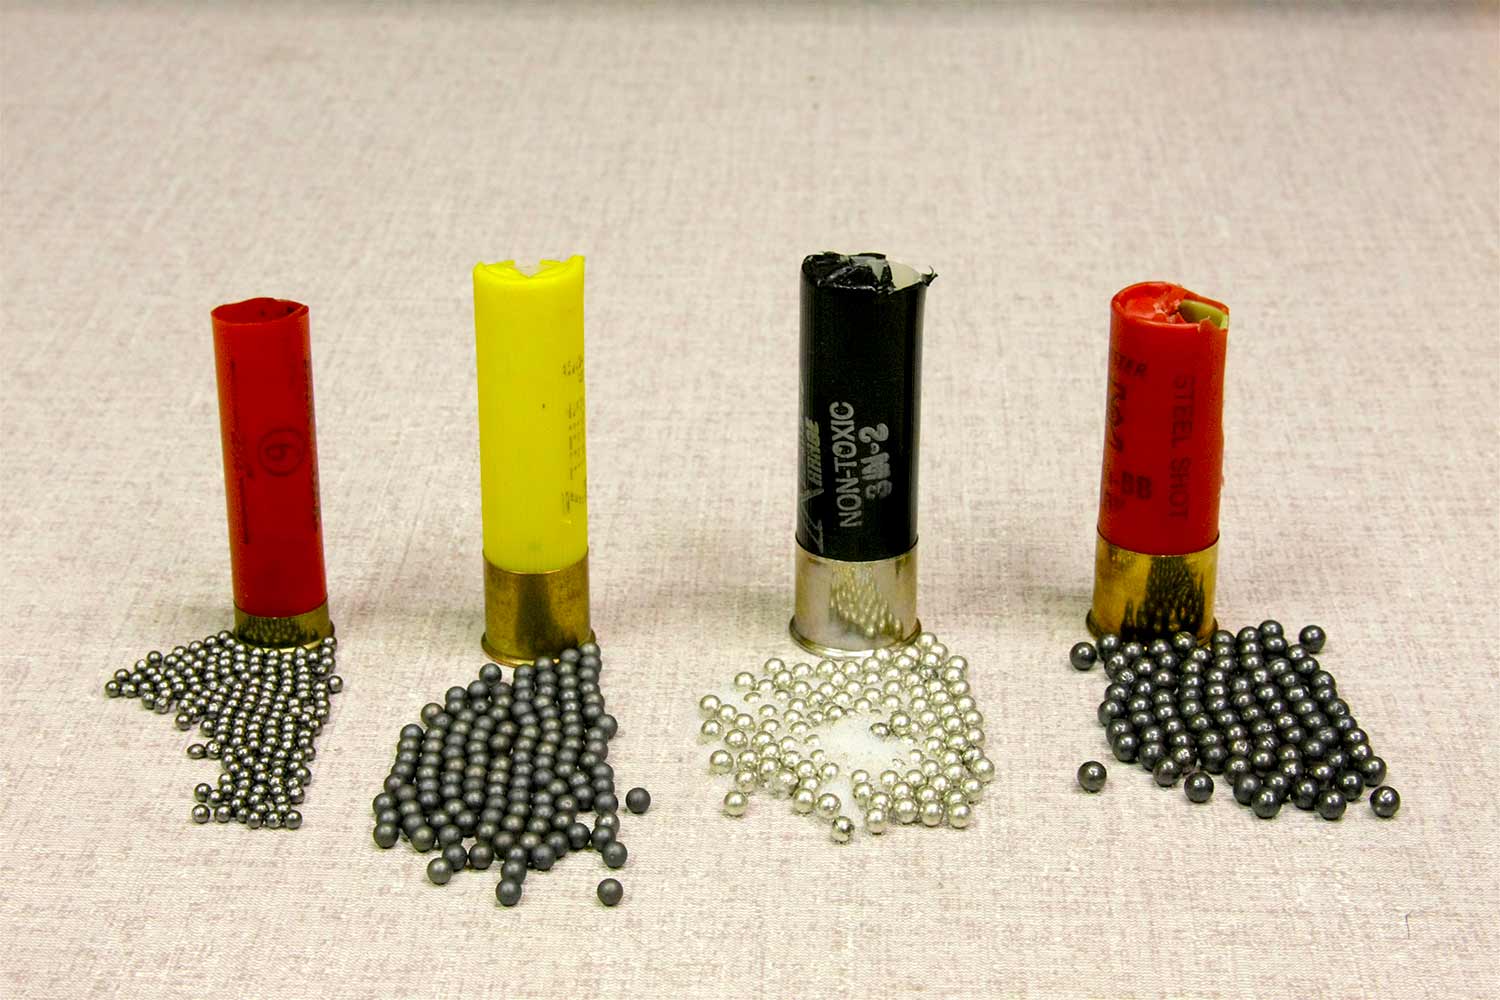 A lineup of shotgun shells and ammo pellets.